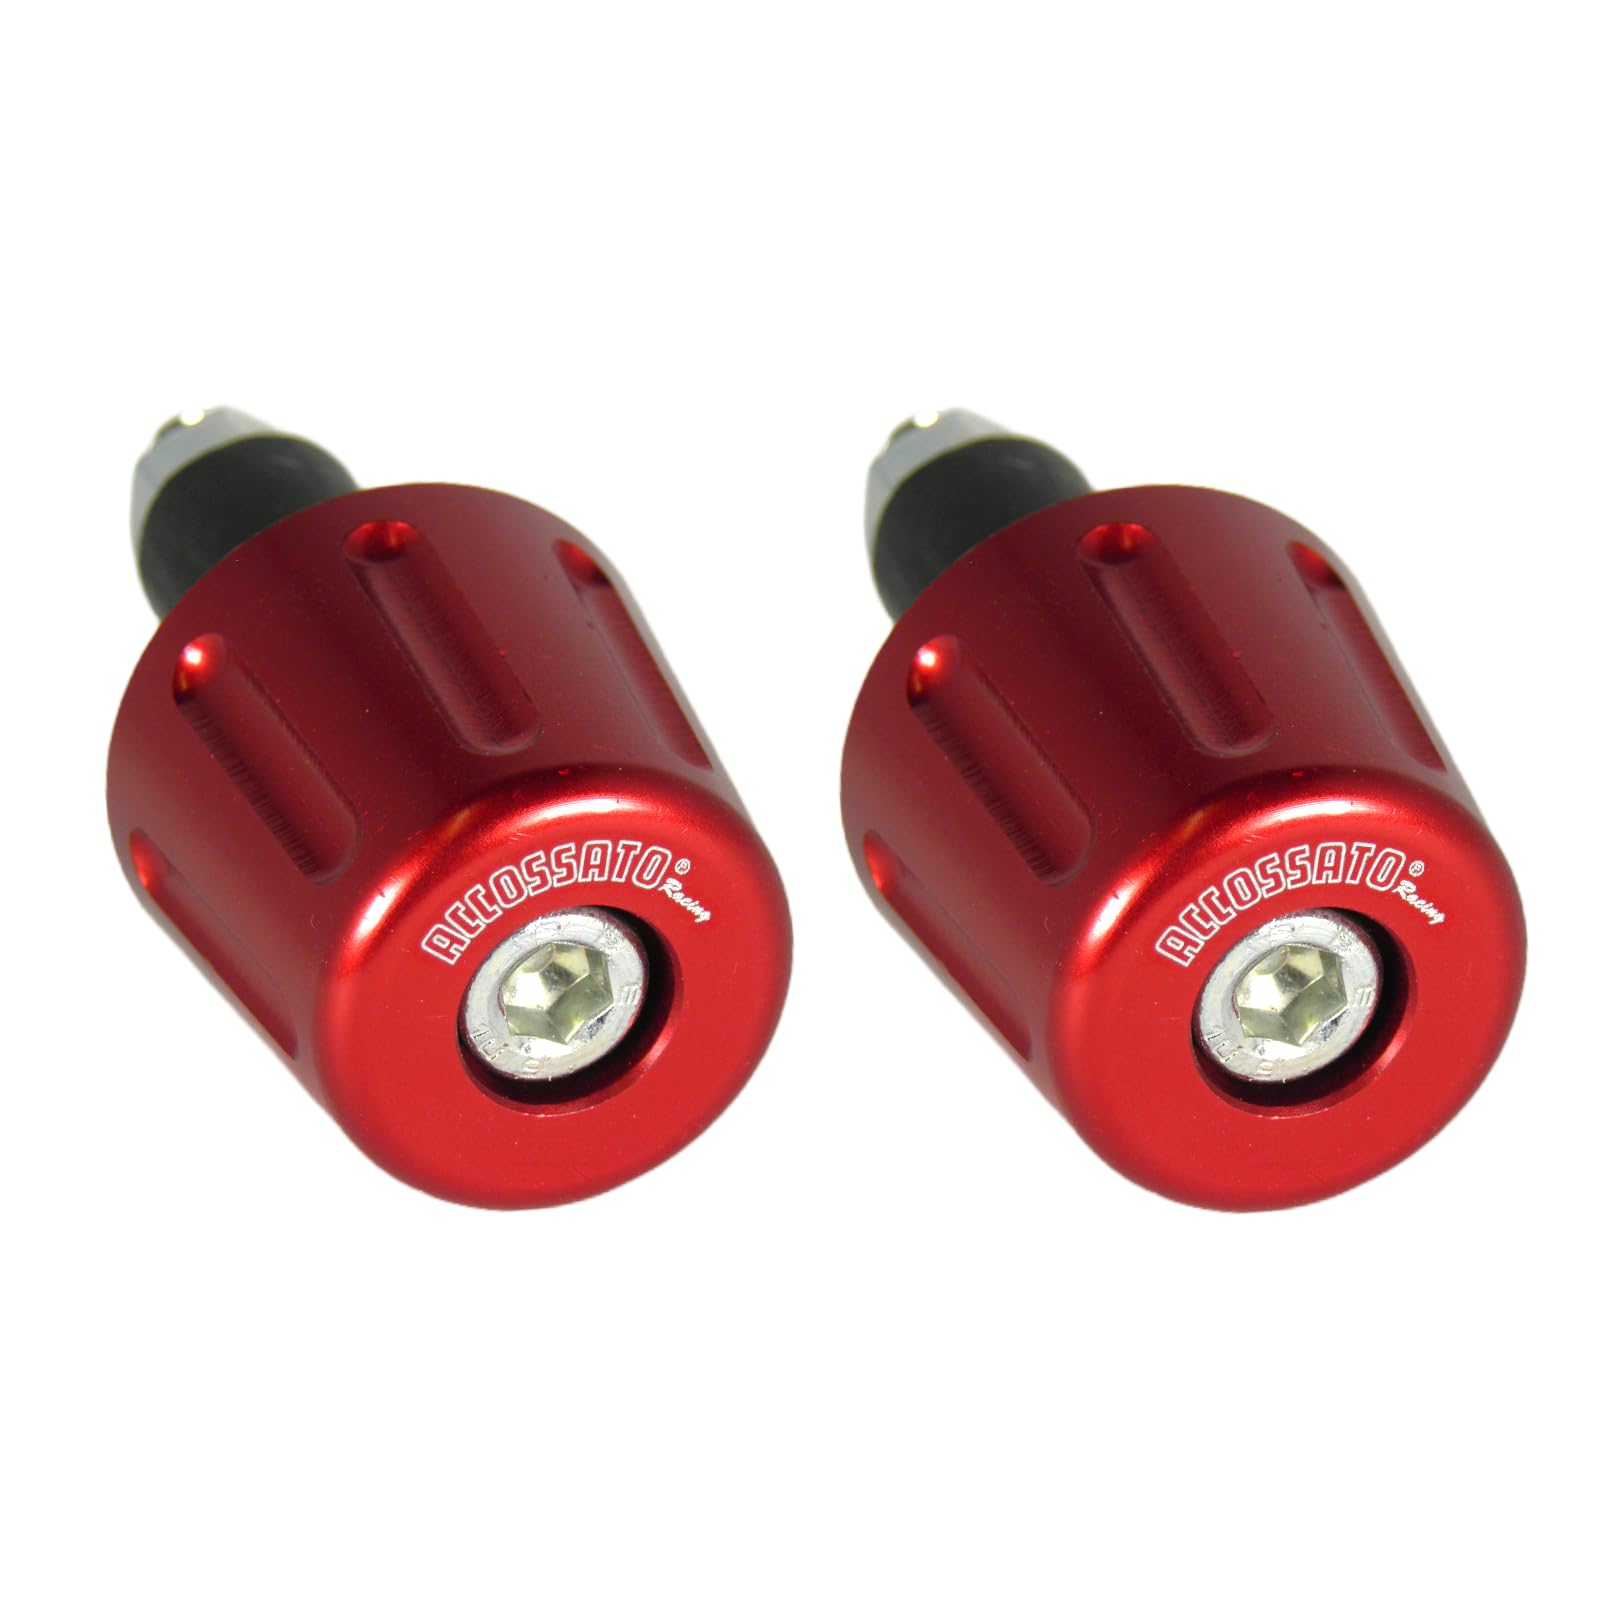 Paar rote Accossato Gegengewichte für Lenker mit Innenloch von 12 mm bis 20 mm für Yamaha Yp 250 Mayesty von 1996 bis 2003 (CC 250) von ACCOSSATO